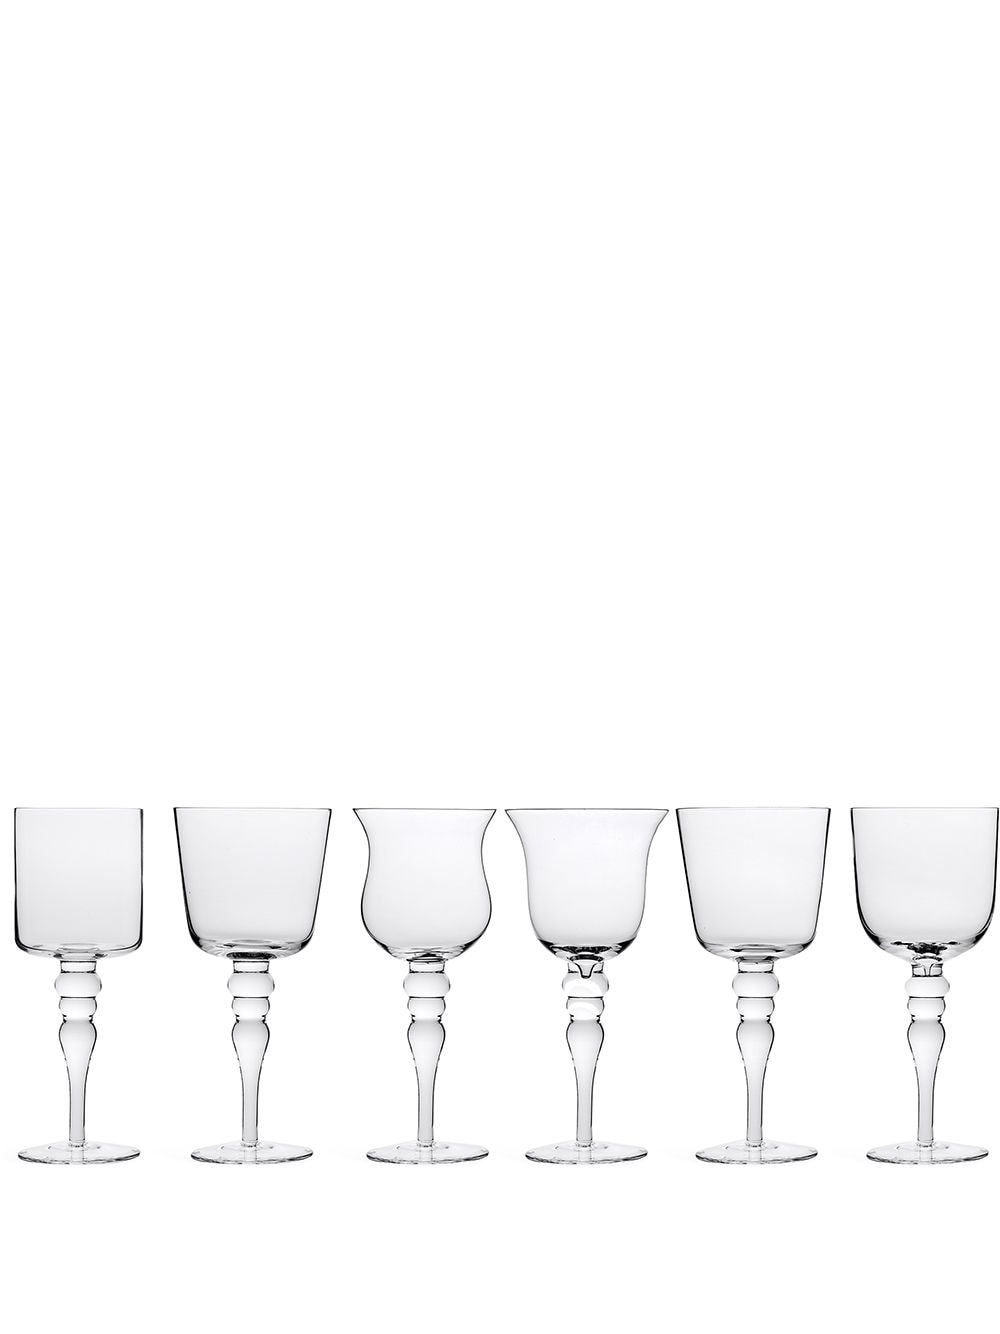 Bitossi Home sculpted wine glasses (set of 6) - Neutrals von Bitossi Home